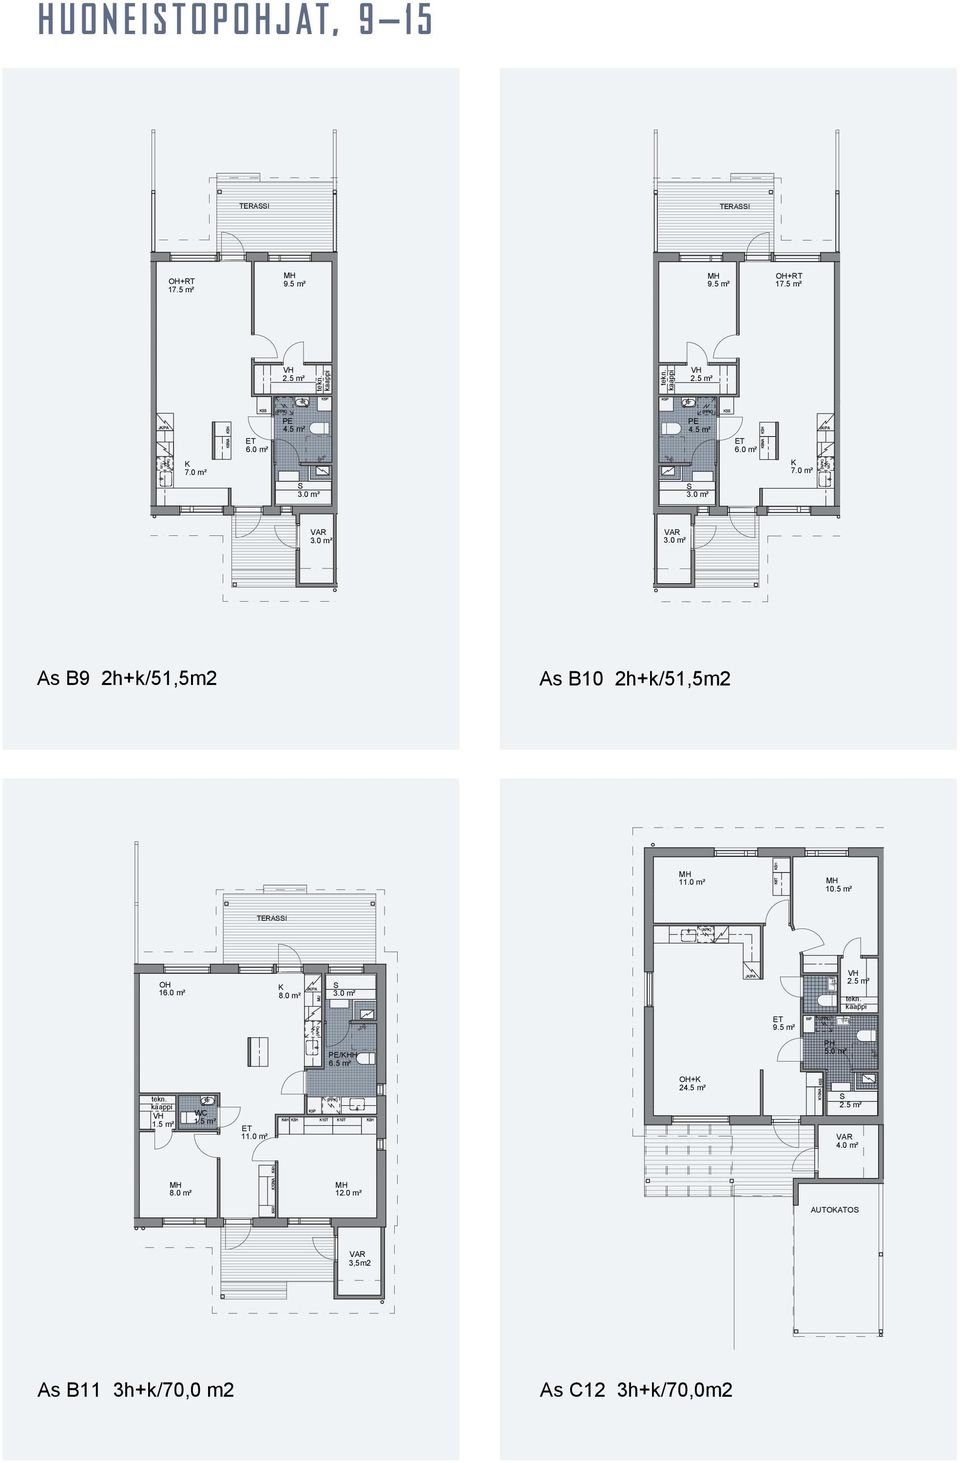 5 m² TERAI OH 16.0 m² 8.0 m² PE/HH 6.5 m² PH 5.0 m² OH+ 24.5 m² 1.5 m² WC 1.